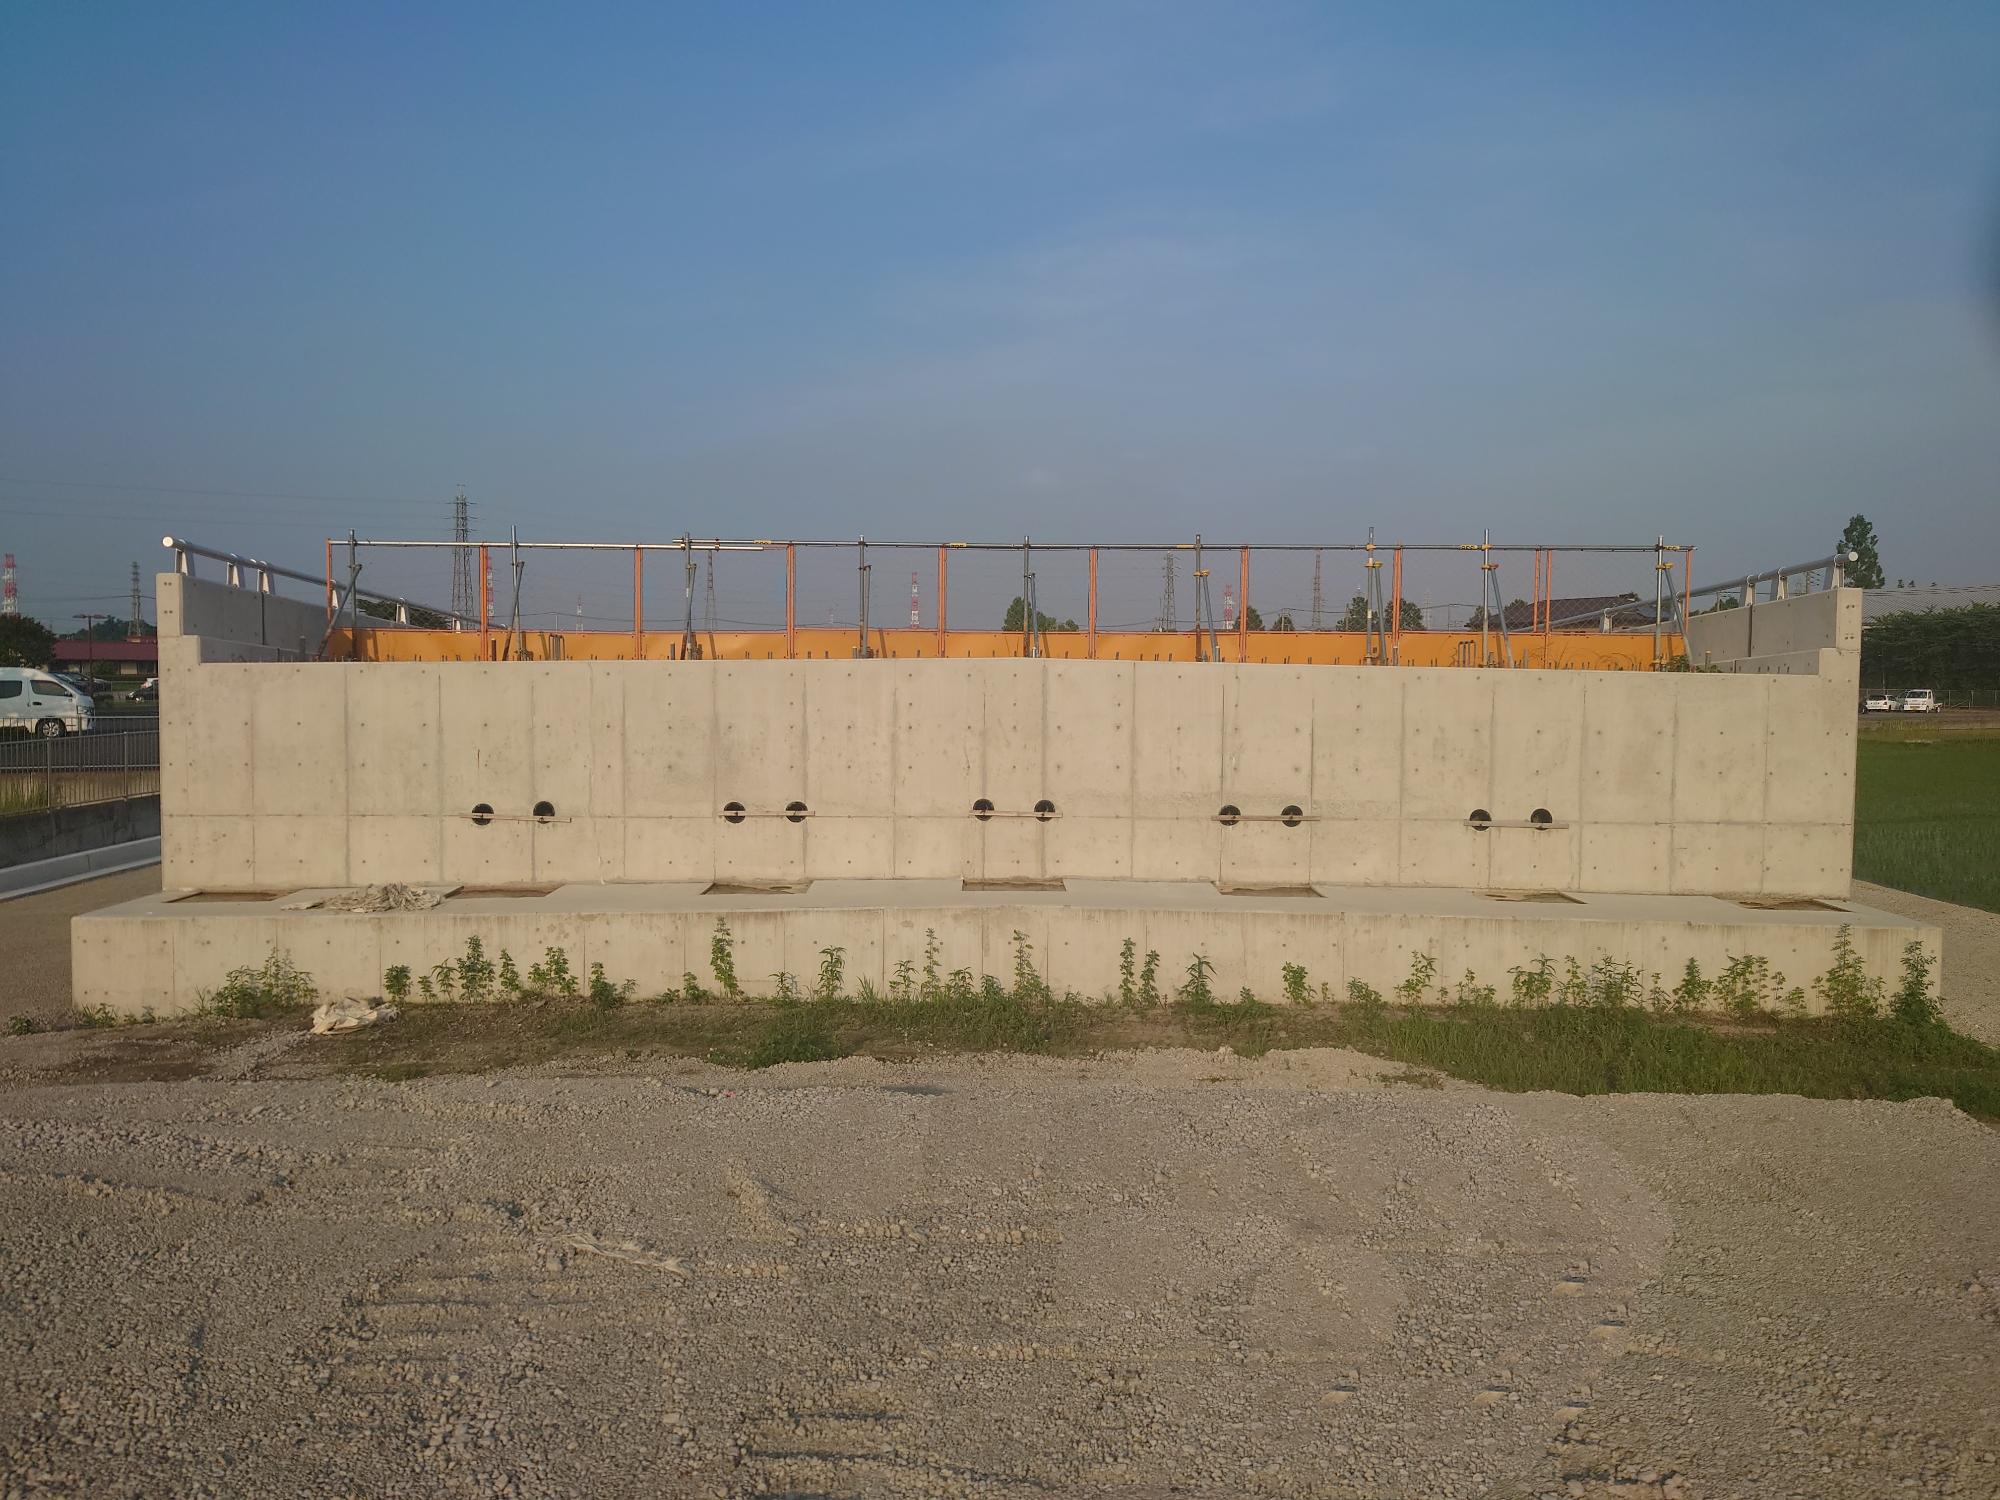 施工中の擁壁部分の上にオレンジ色の工事用のフェンスが並べられている整備中の都市計画道路を正面から撮影した写真